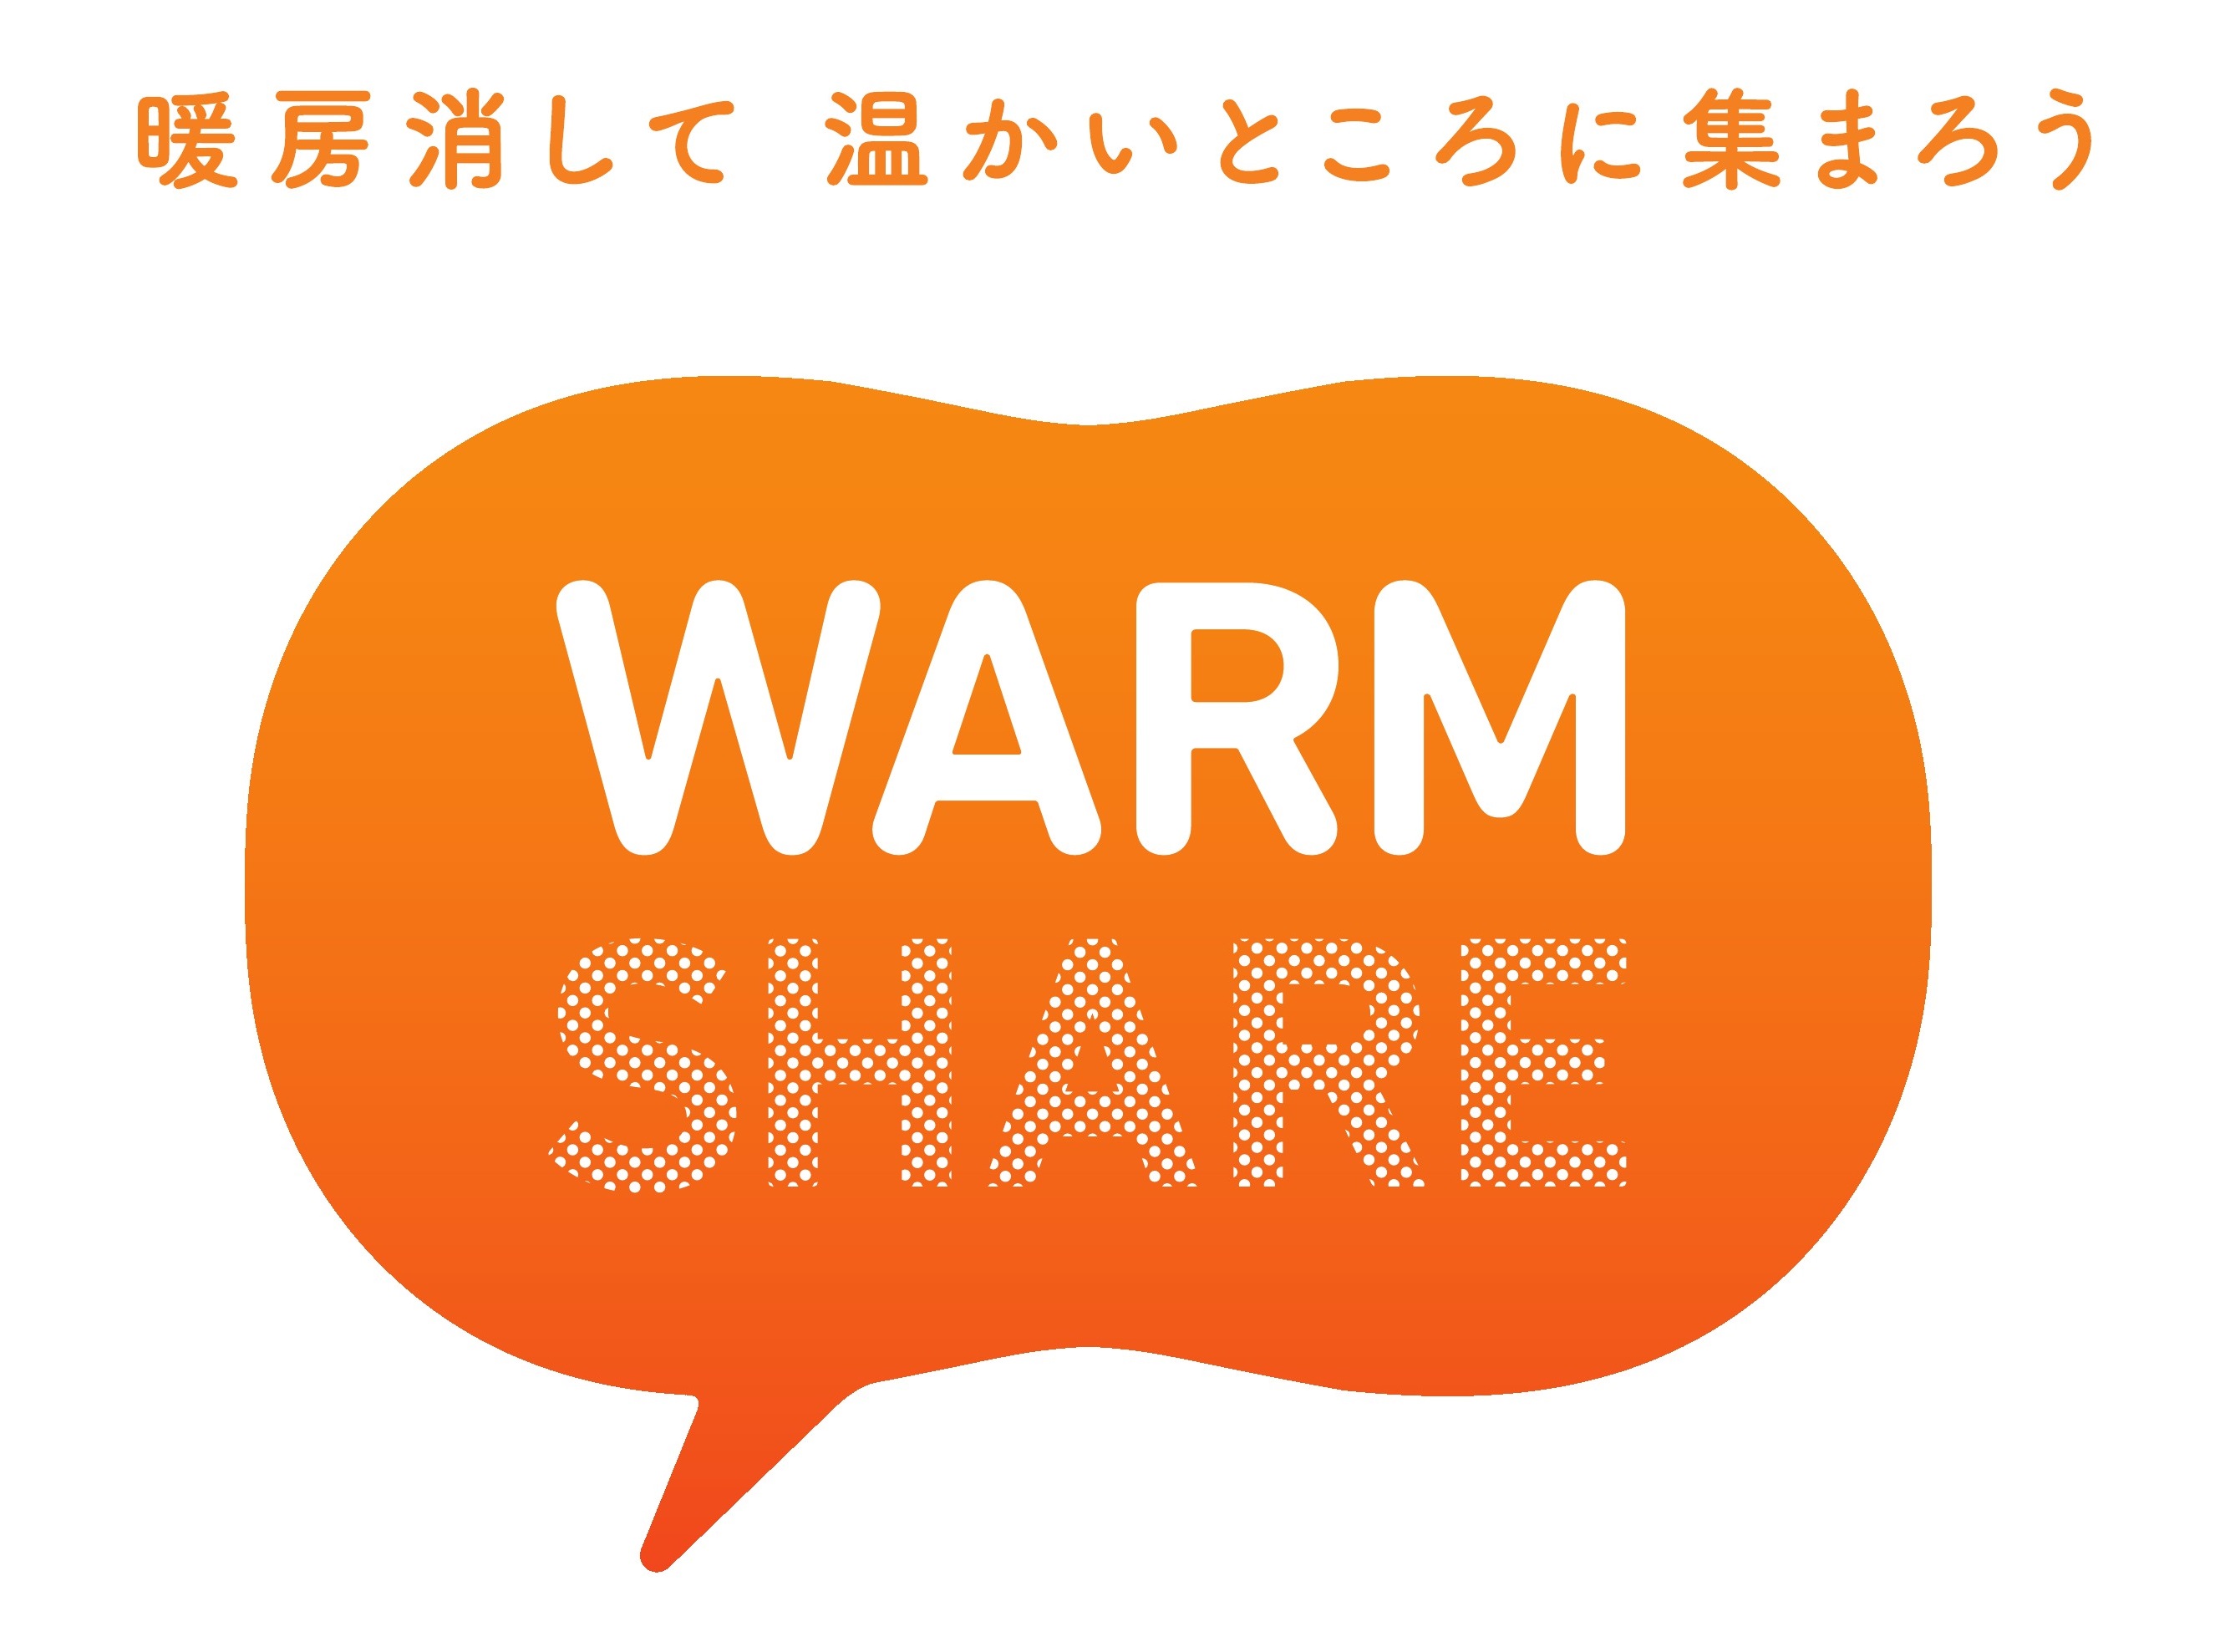 warmshare_logo